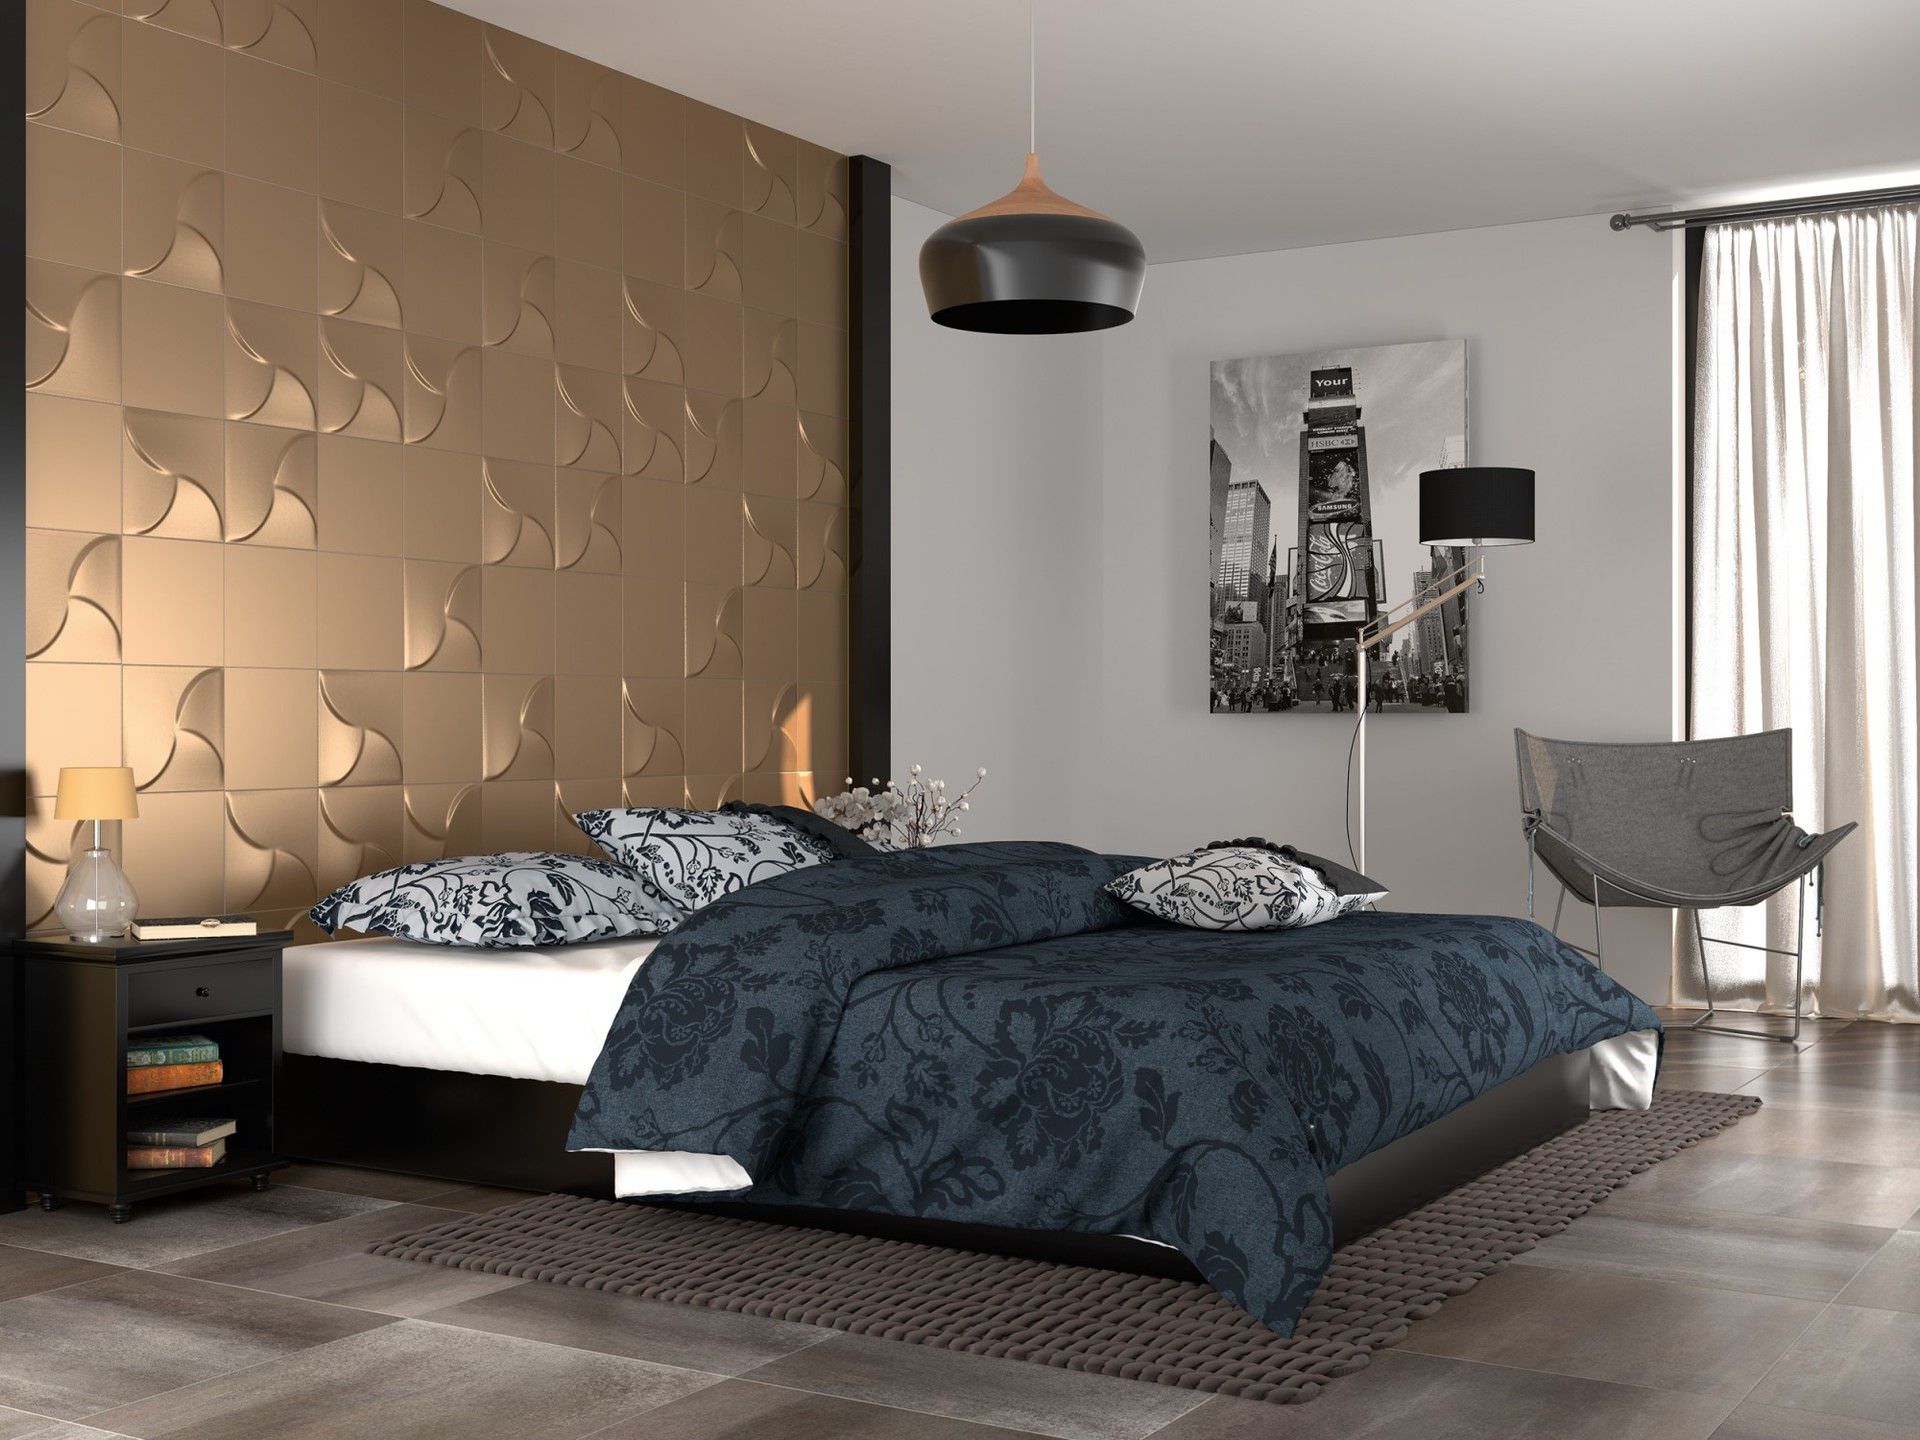 Tranh treo phòng ngủ đơn giản phù hợp với các thiết kế tối giản